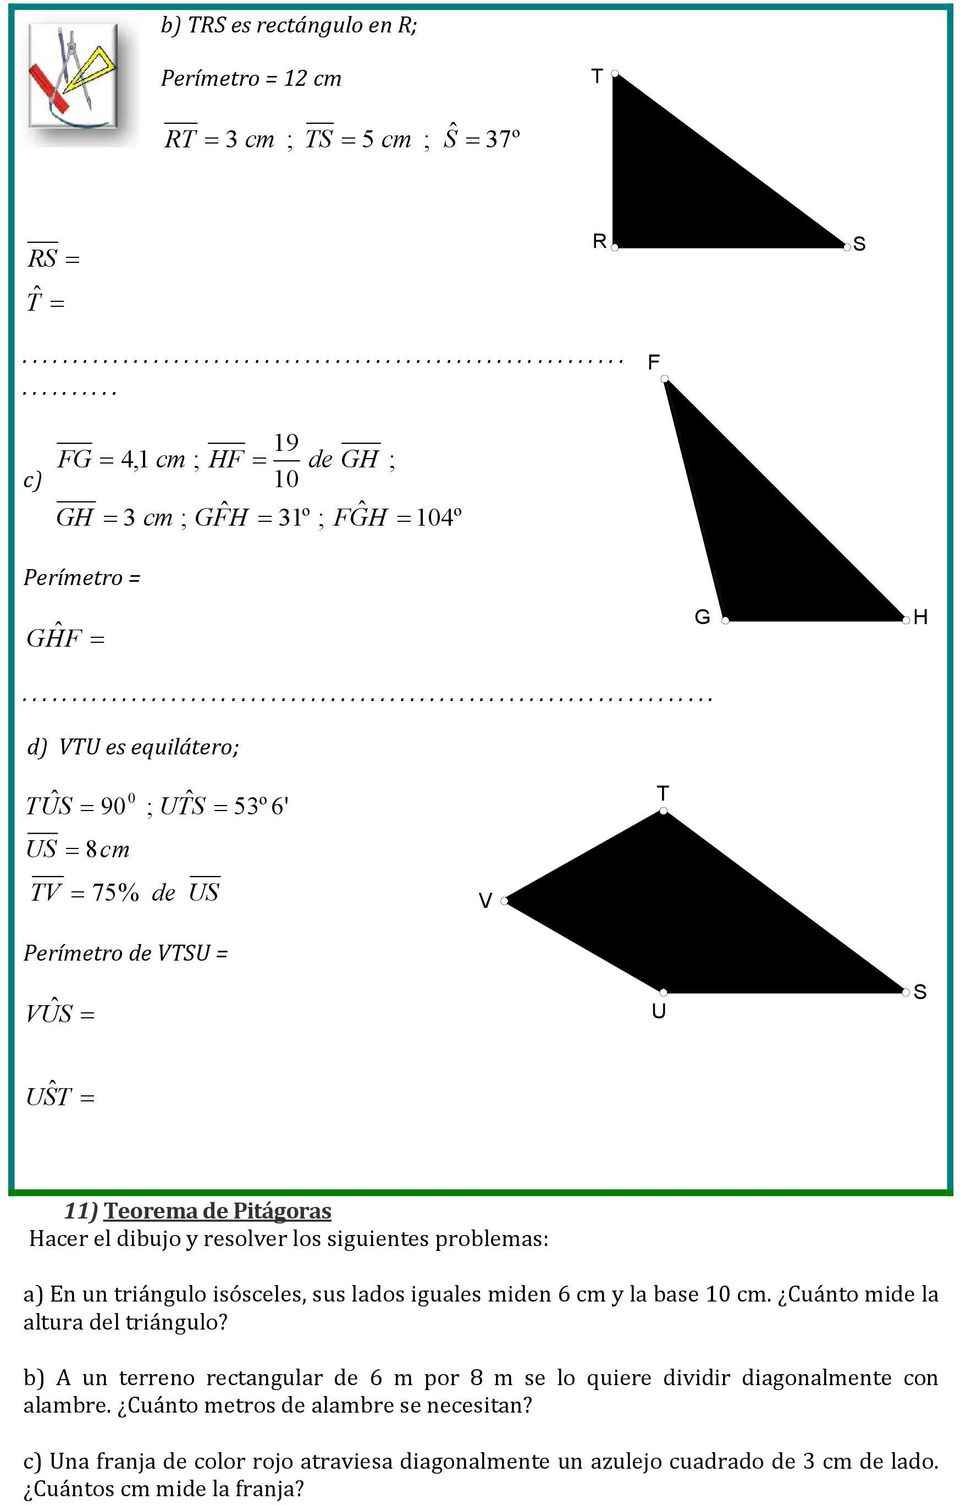 Hacer el dibujo y resolver los siguientes problemas: a) En un triángulo isósceles, sus lados iguales miden 6 cm y la base 0 cm. Cuánto mide la altura del triángulo?